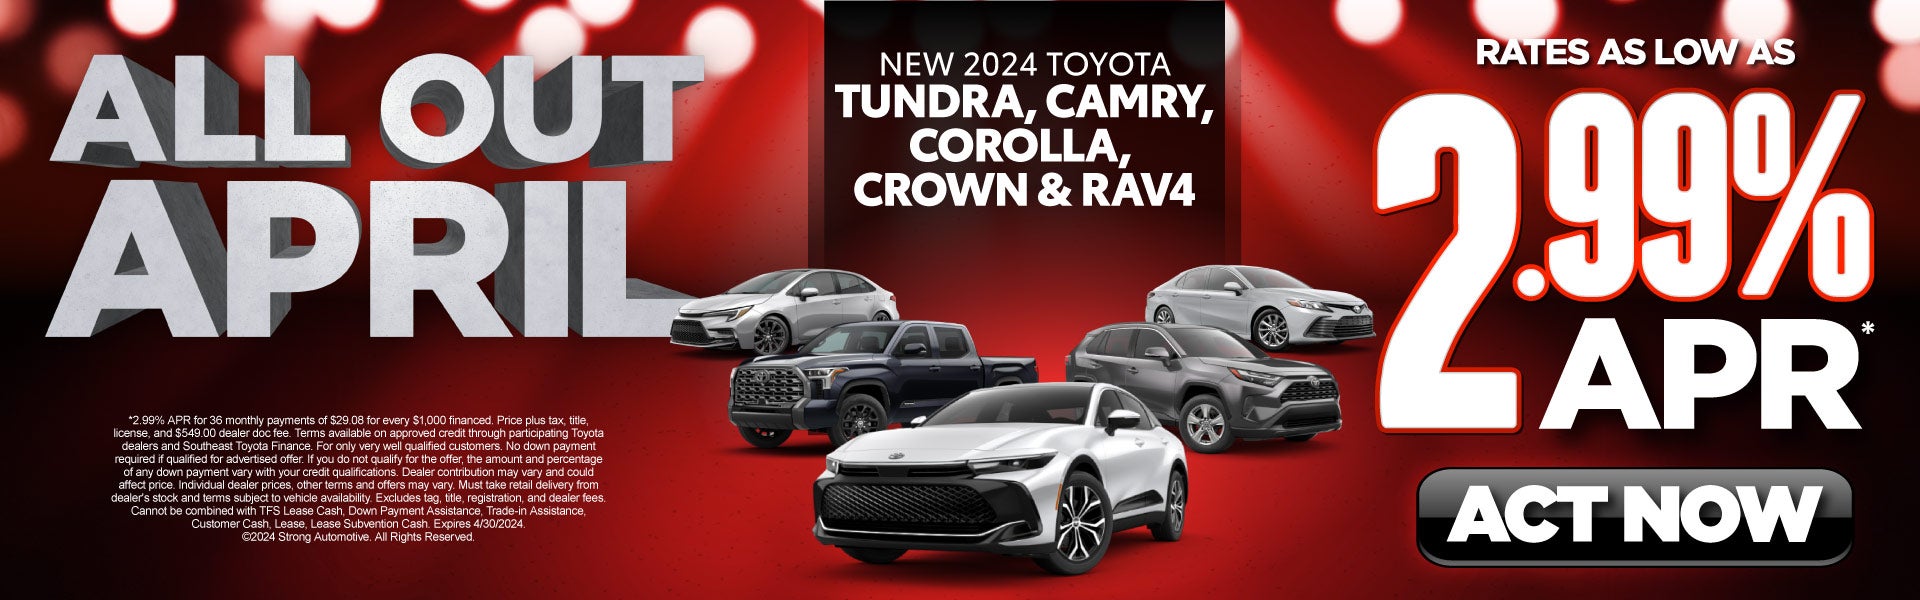 Select New 2024 Toyota Models - 2.99% APR*